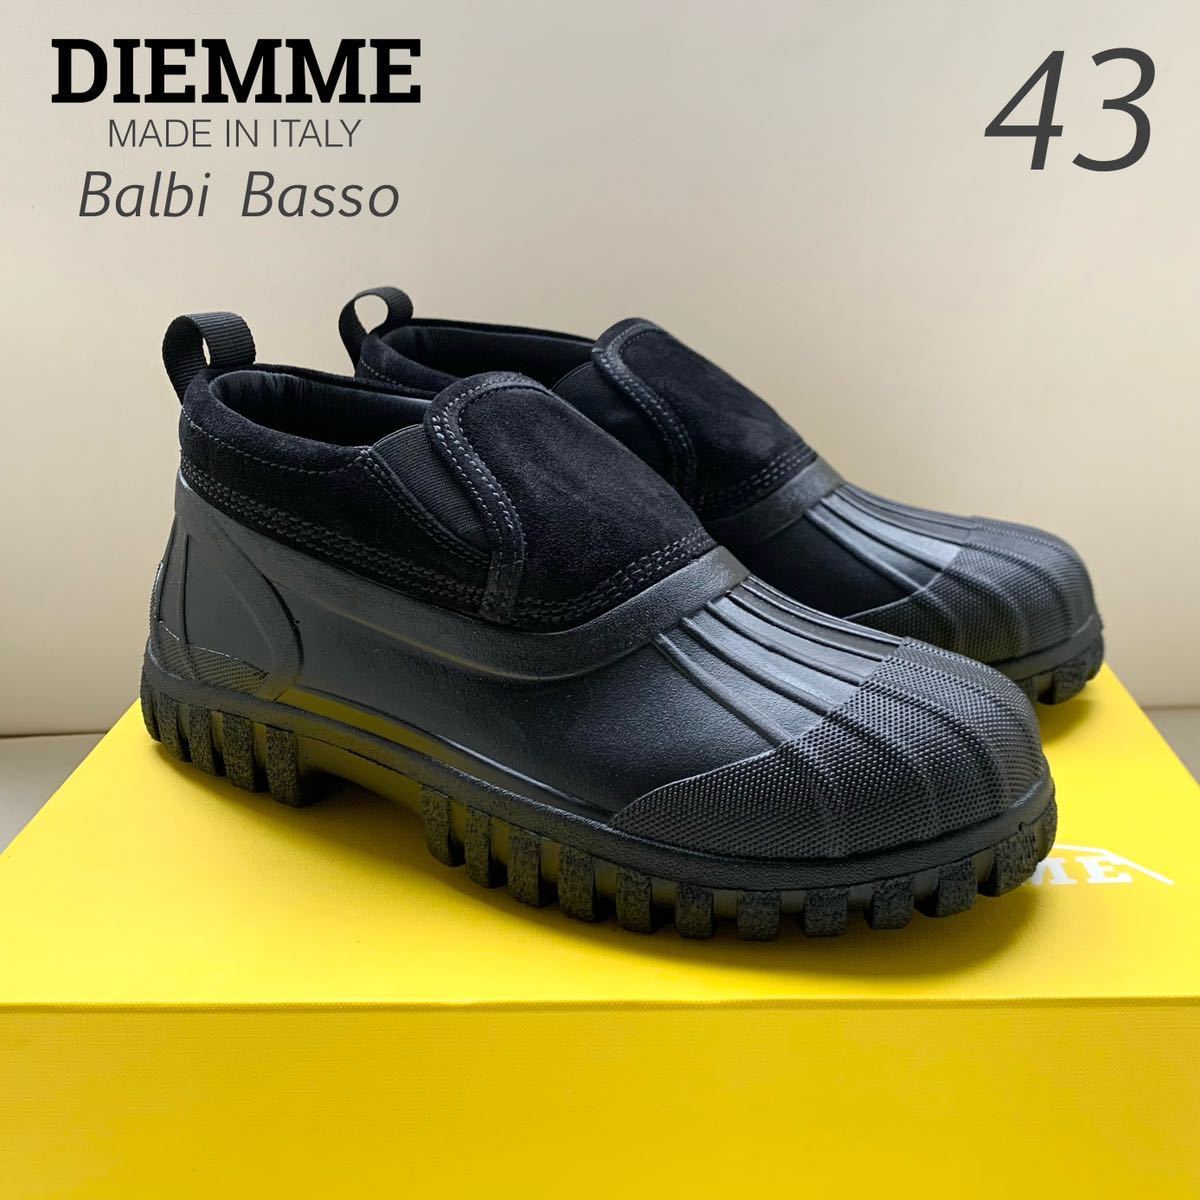 新品 イタリア製 DIEMME ディエッメ BALBI BASSO SUEDE スエード スリッポン シューズ 43 定3.74万 黒 メンズ ブーツ 雨 雪 27.5㎝ 送料込